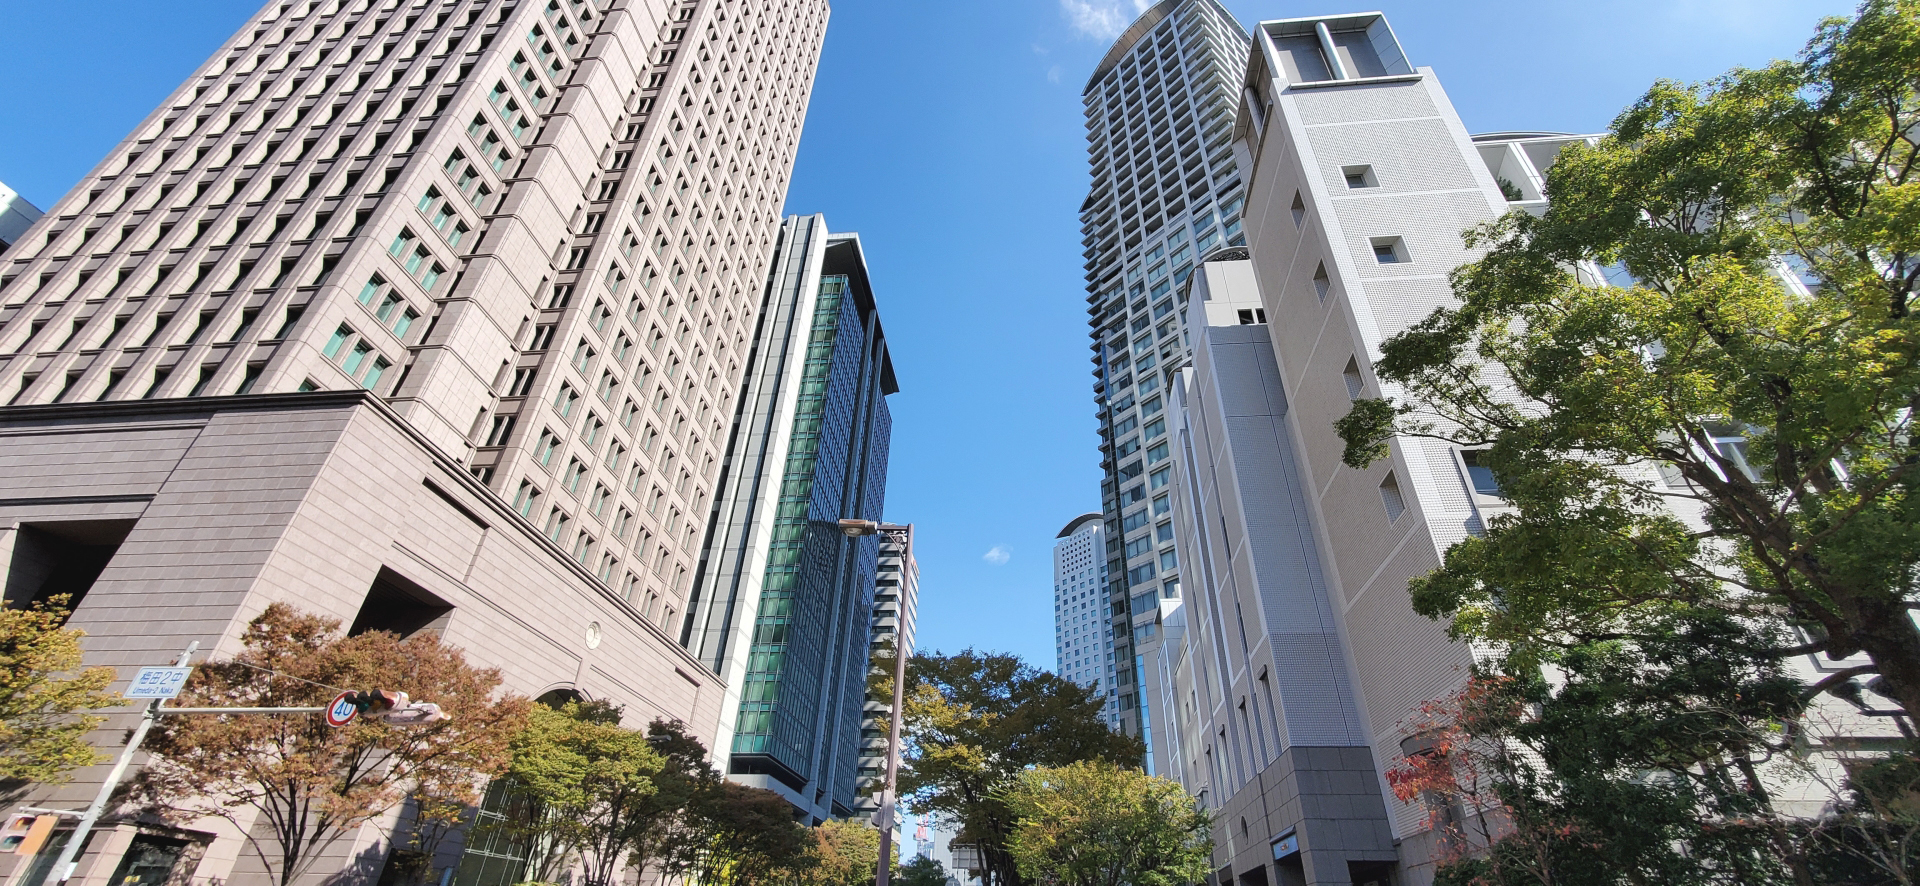 当社は大阪市東成区を中心に東大阪市など周辺地域の他、関西全域の防水工事、塗装工事に対応しています。塗装工事に関連する工事として、外壁の下地補修工事や外壁調査、タイルの剥落防止工事、美装工事など、幅広い工事も承ります。